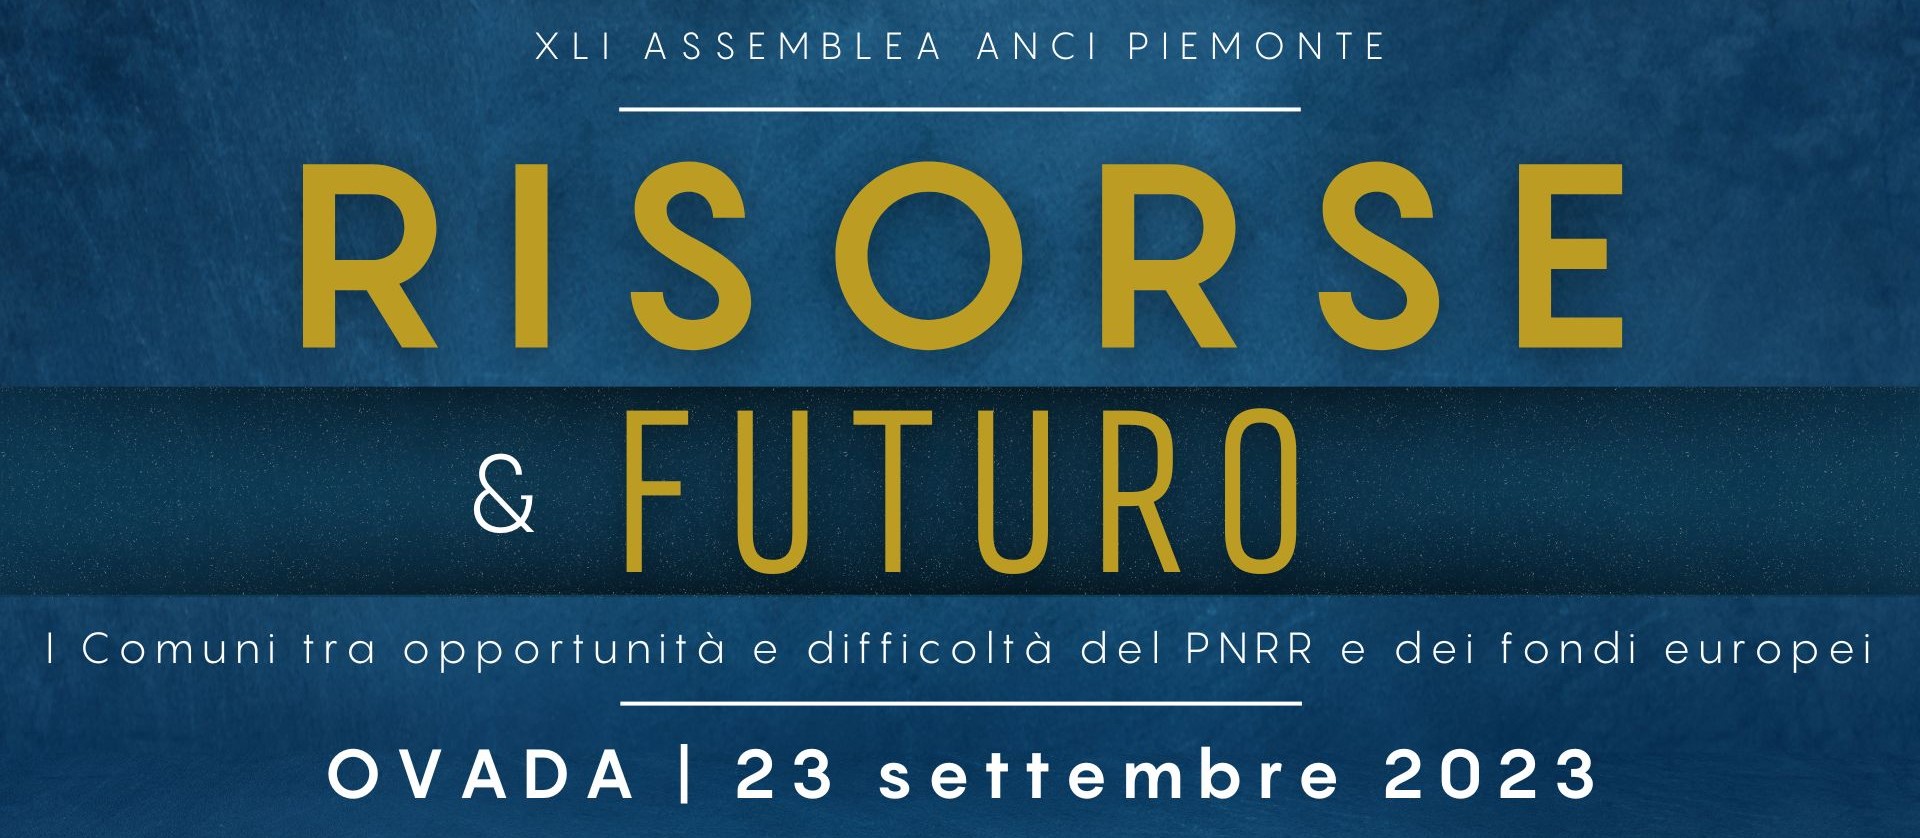 Assemblea ANCI Piemonte - Risorse e futuro Pagina Speciale